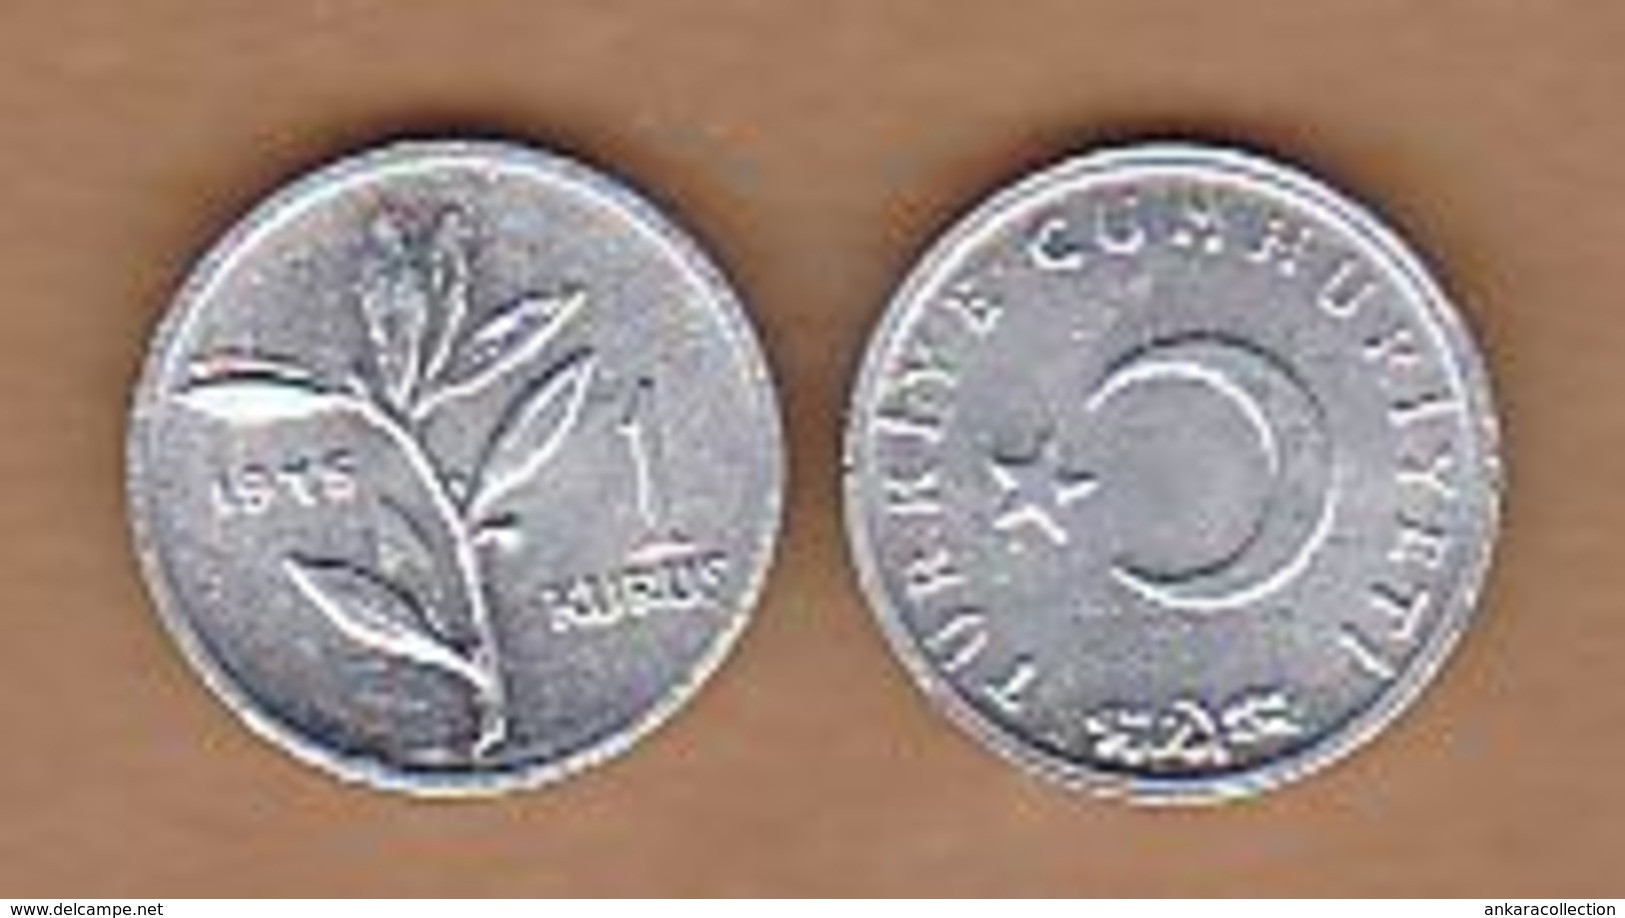 AC - TURKEY 1 KURUS 1975 ALUMINUM COIN UNCIRCULATED - Turquie